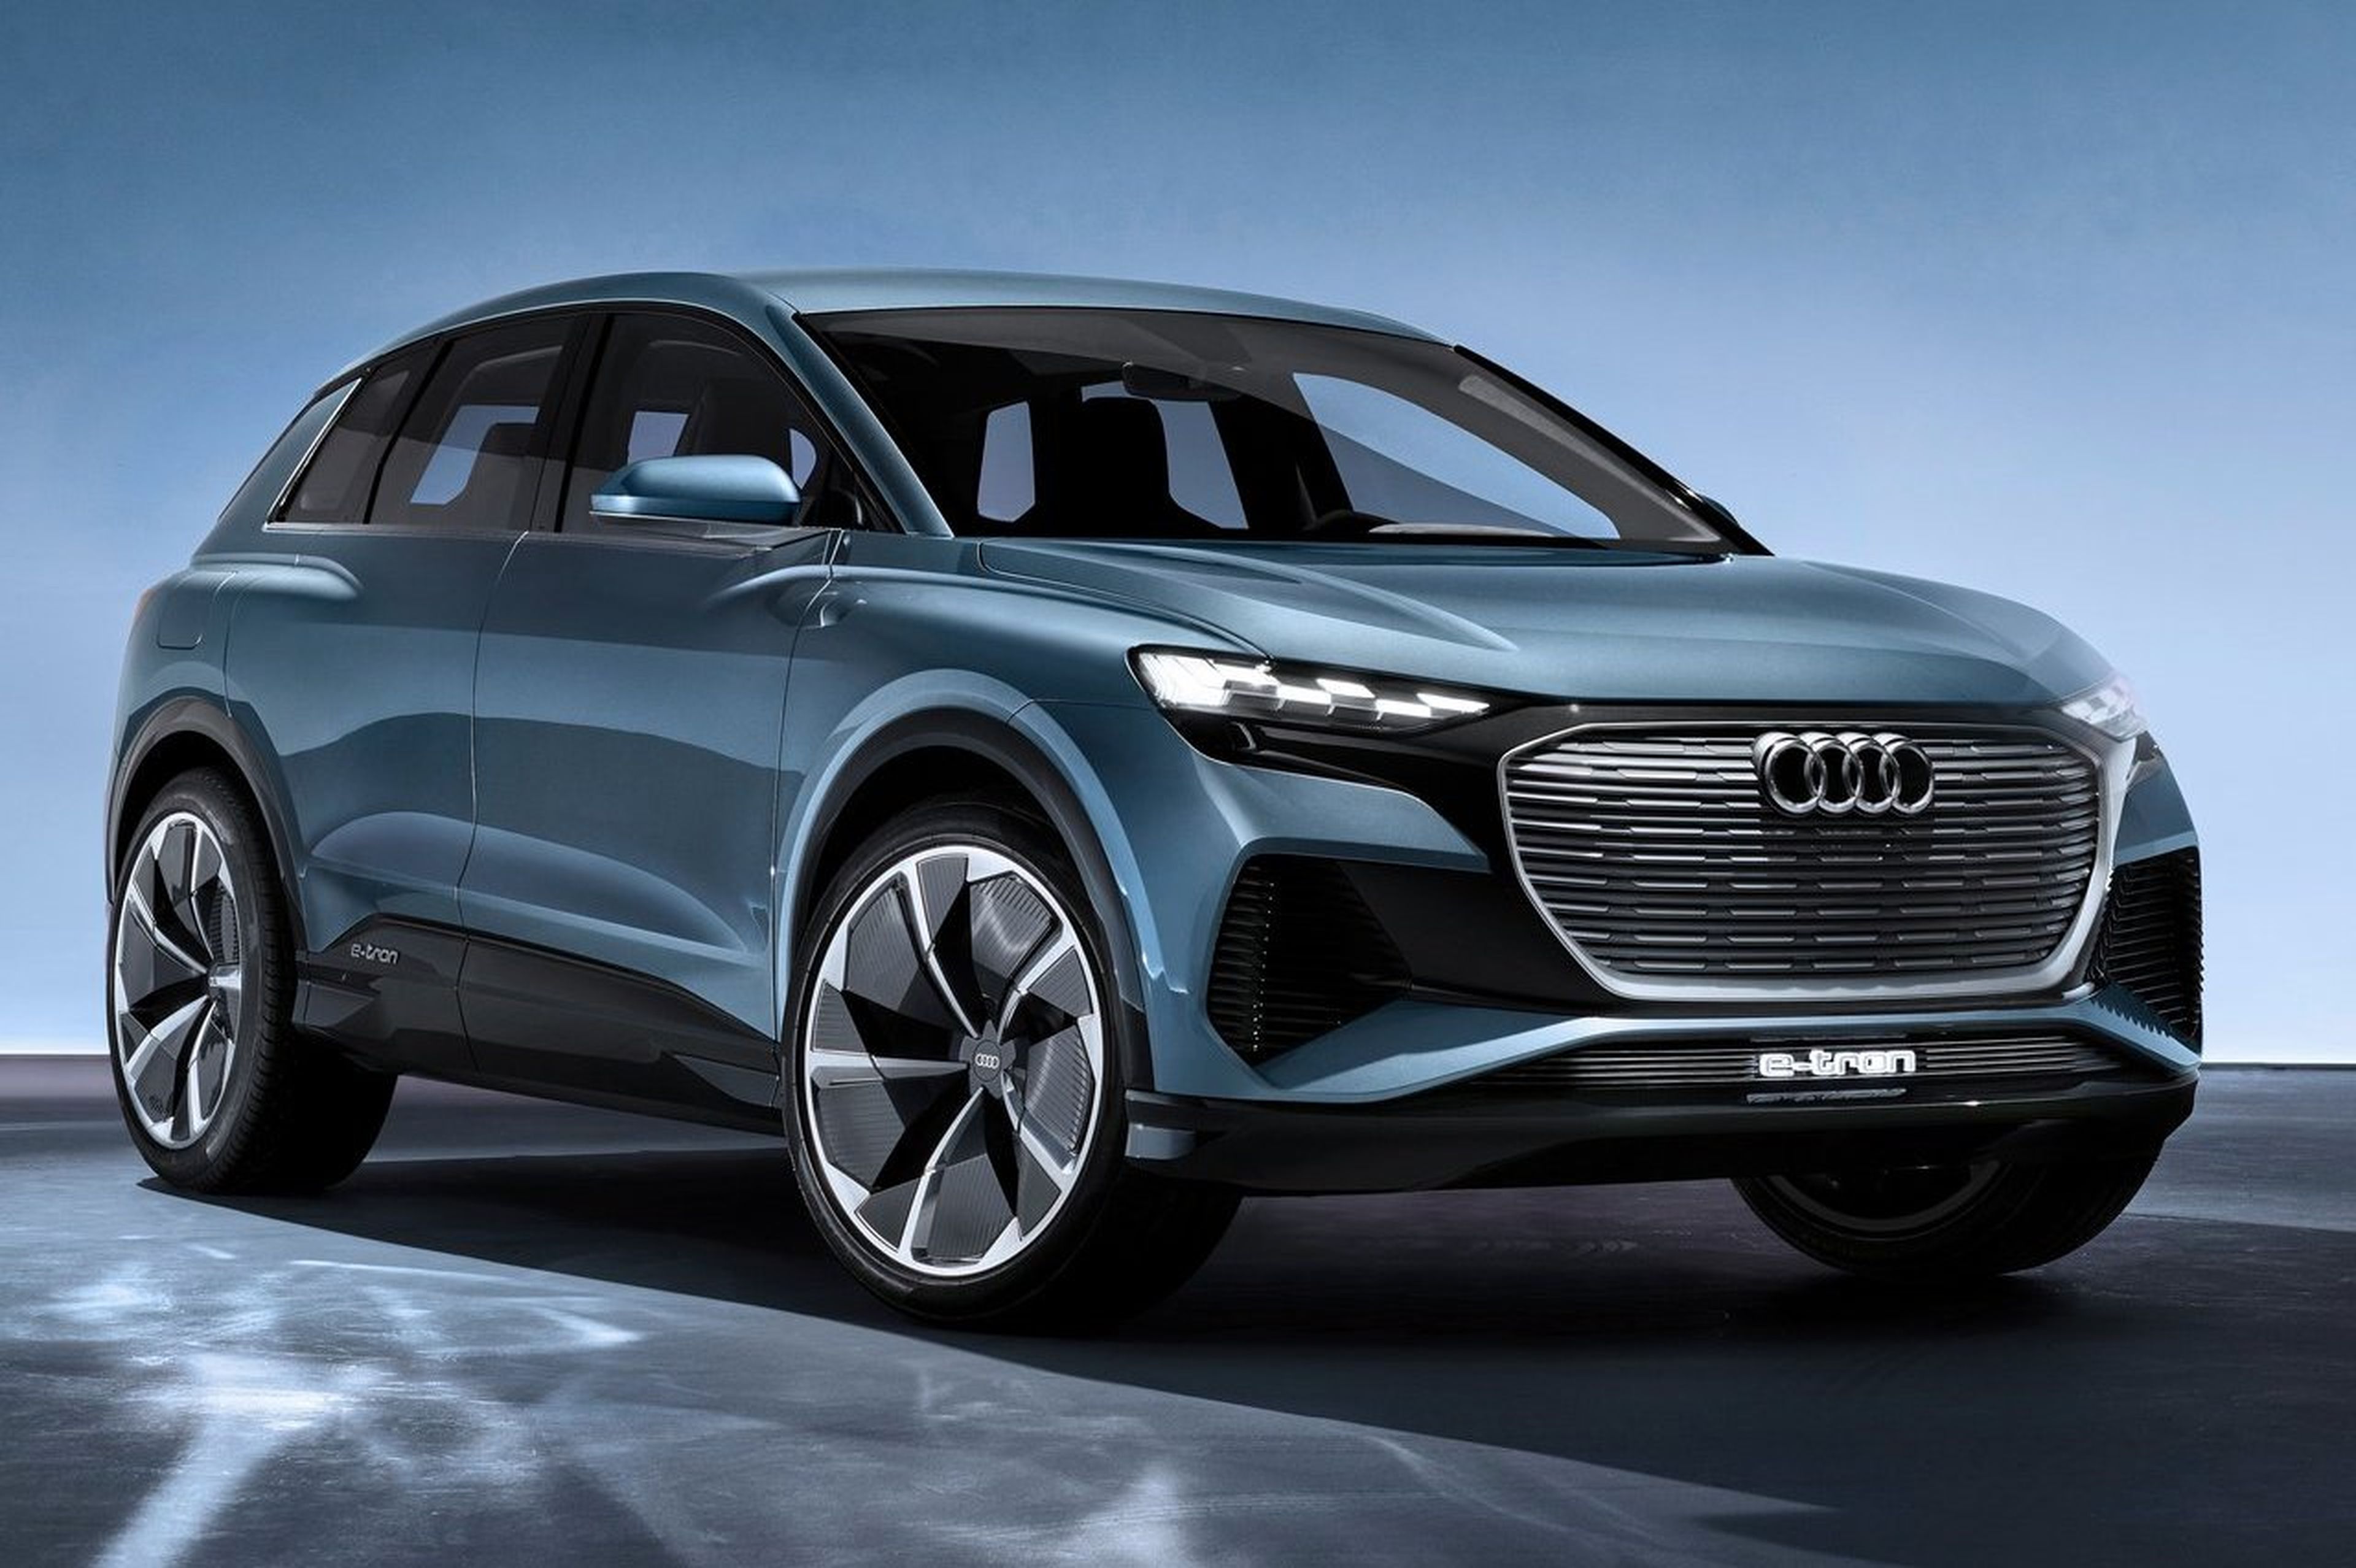 Audi confirma el lanzamiento del Q6 etron eléctrico en 2023 Auto